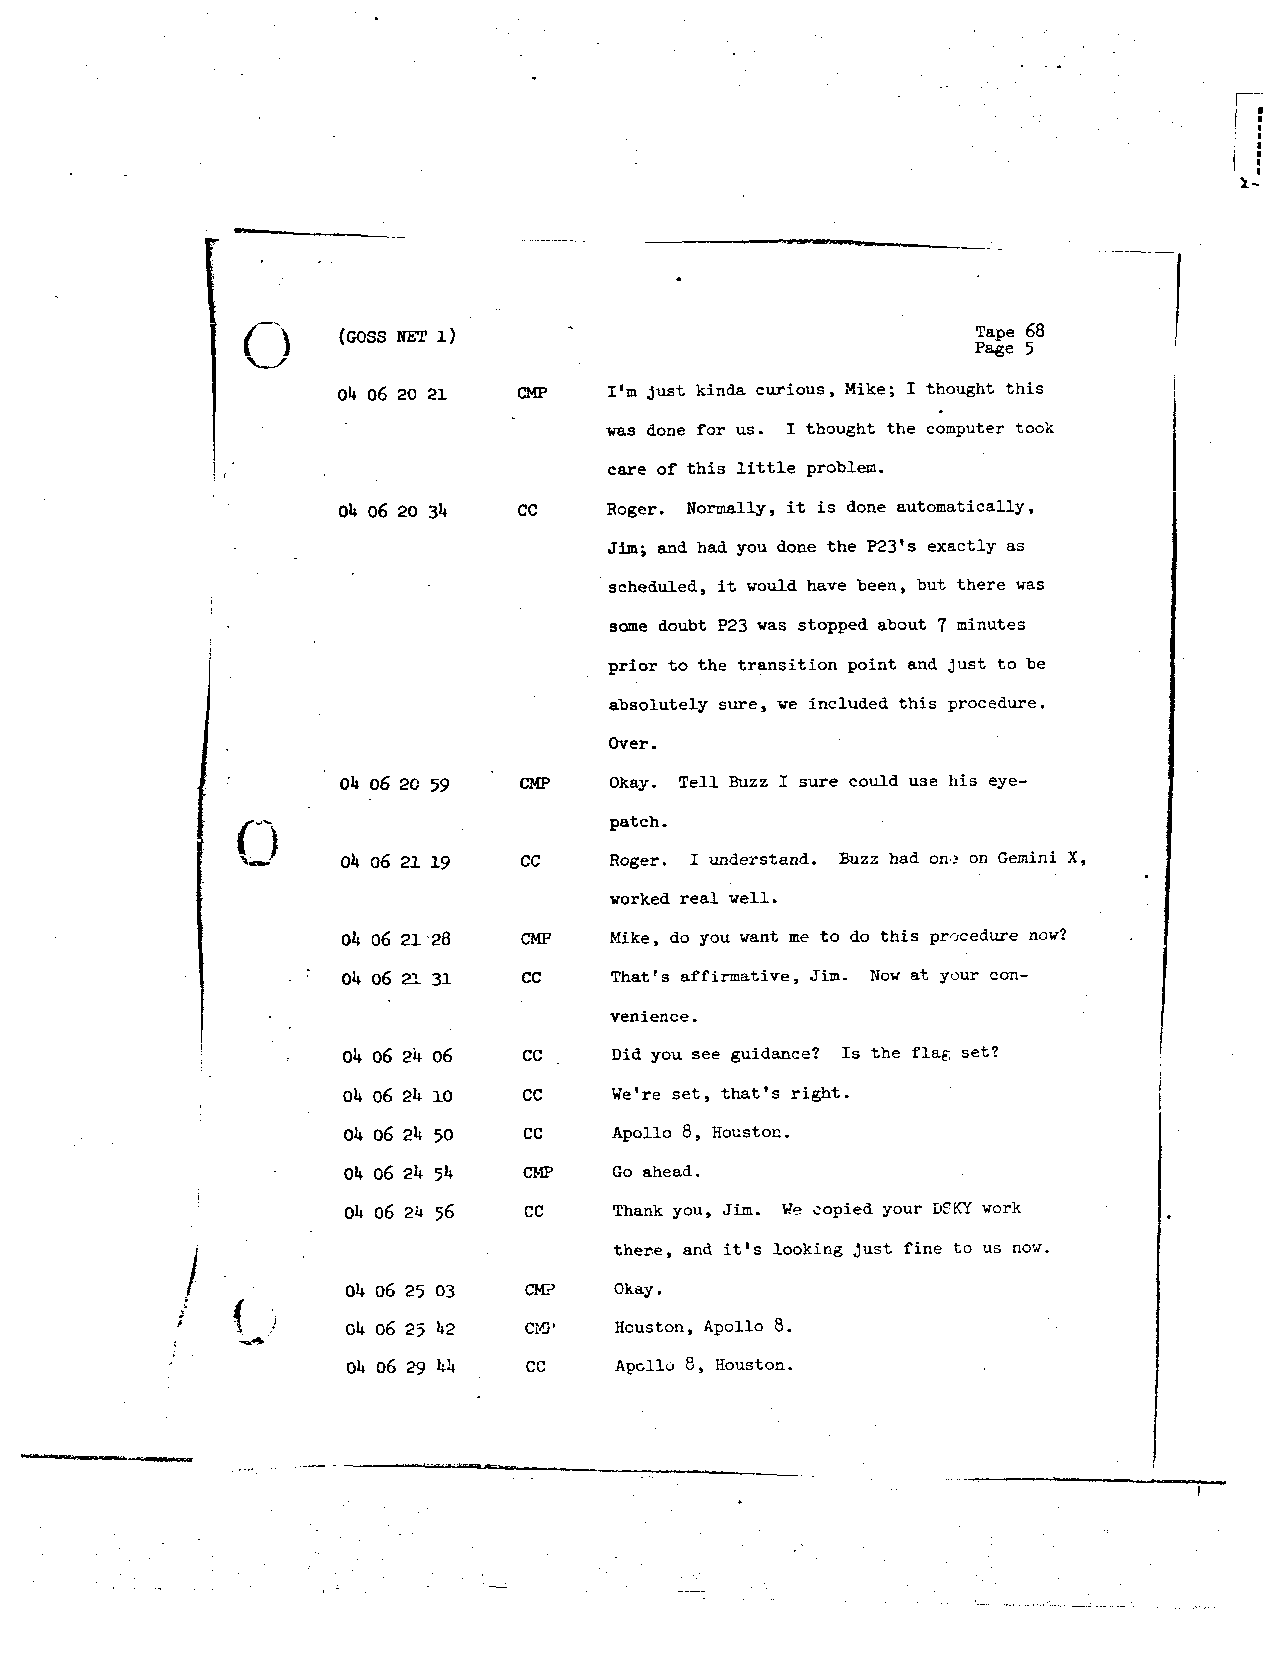 Page 537 of Apollo 8’s original transcript